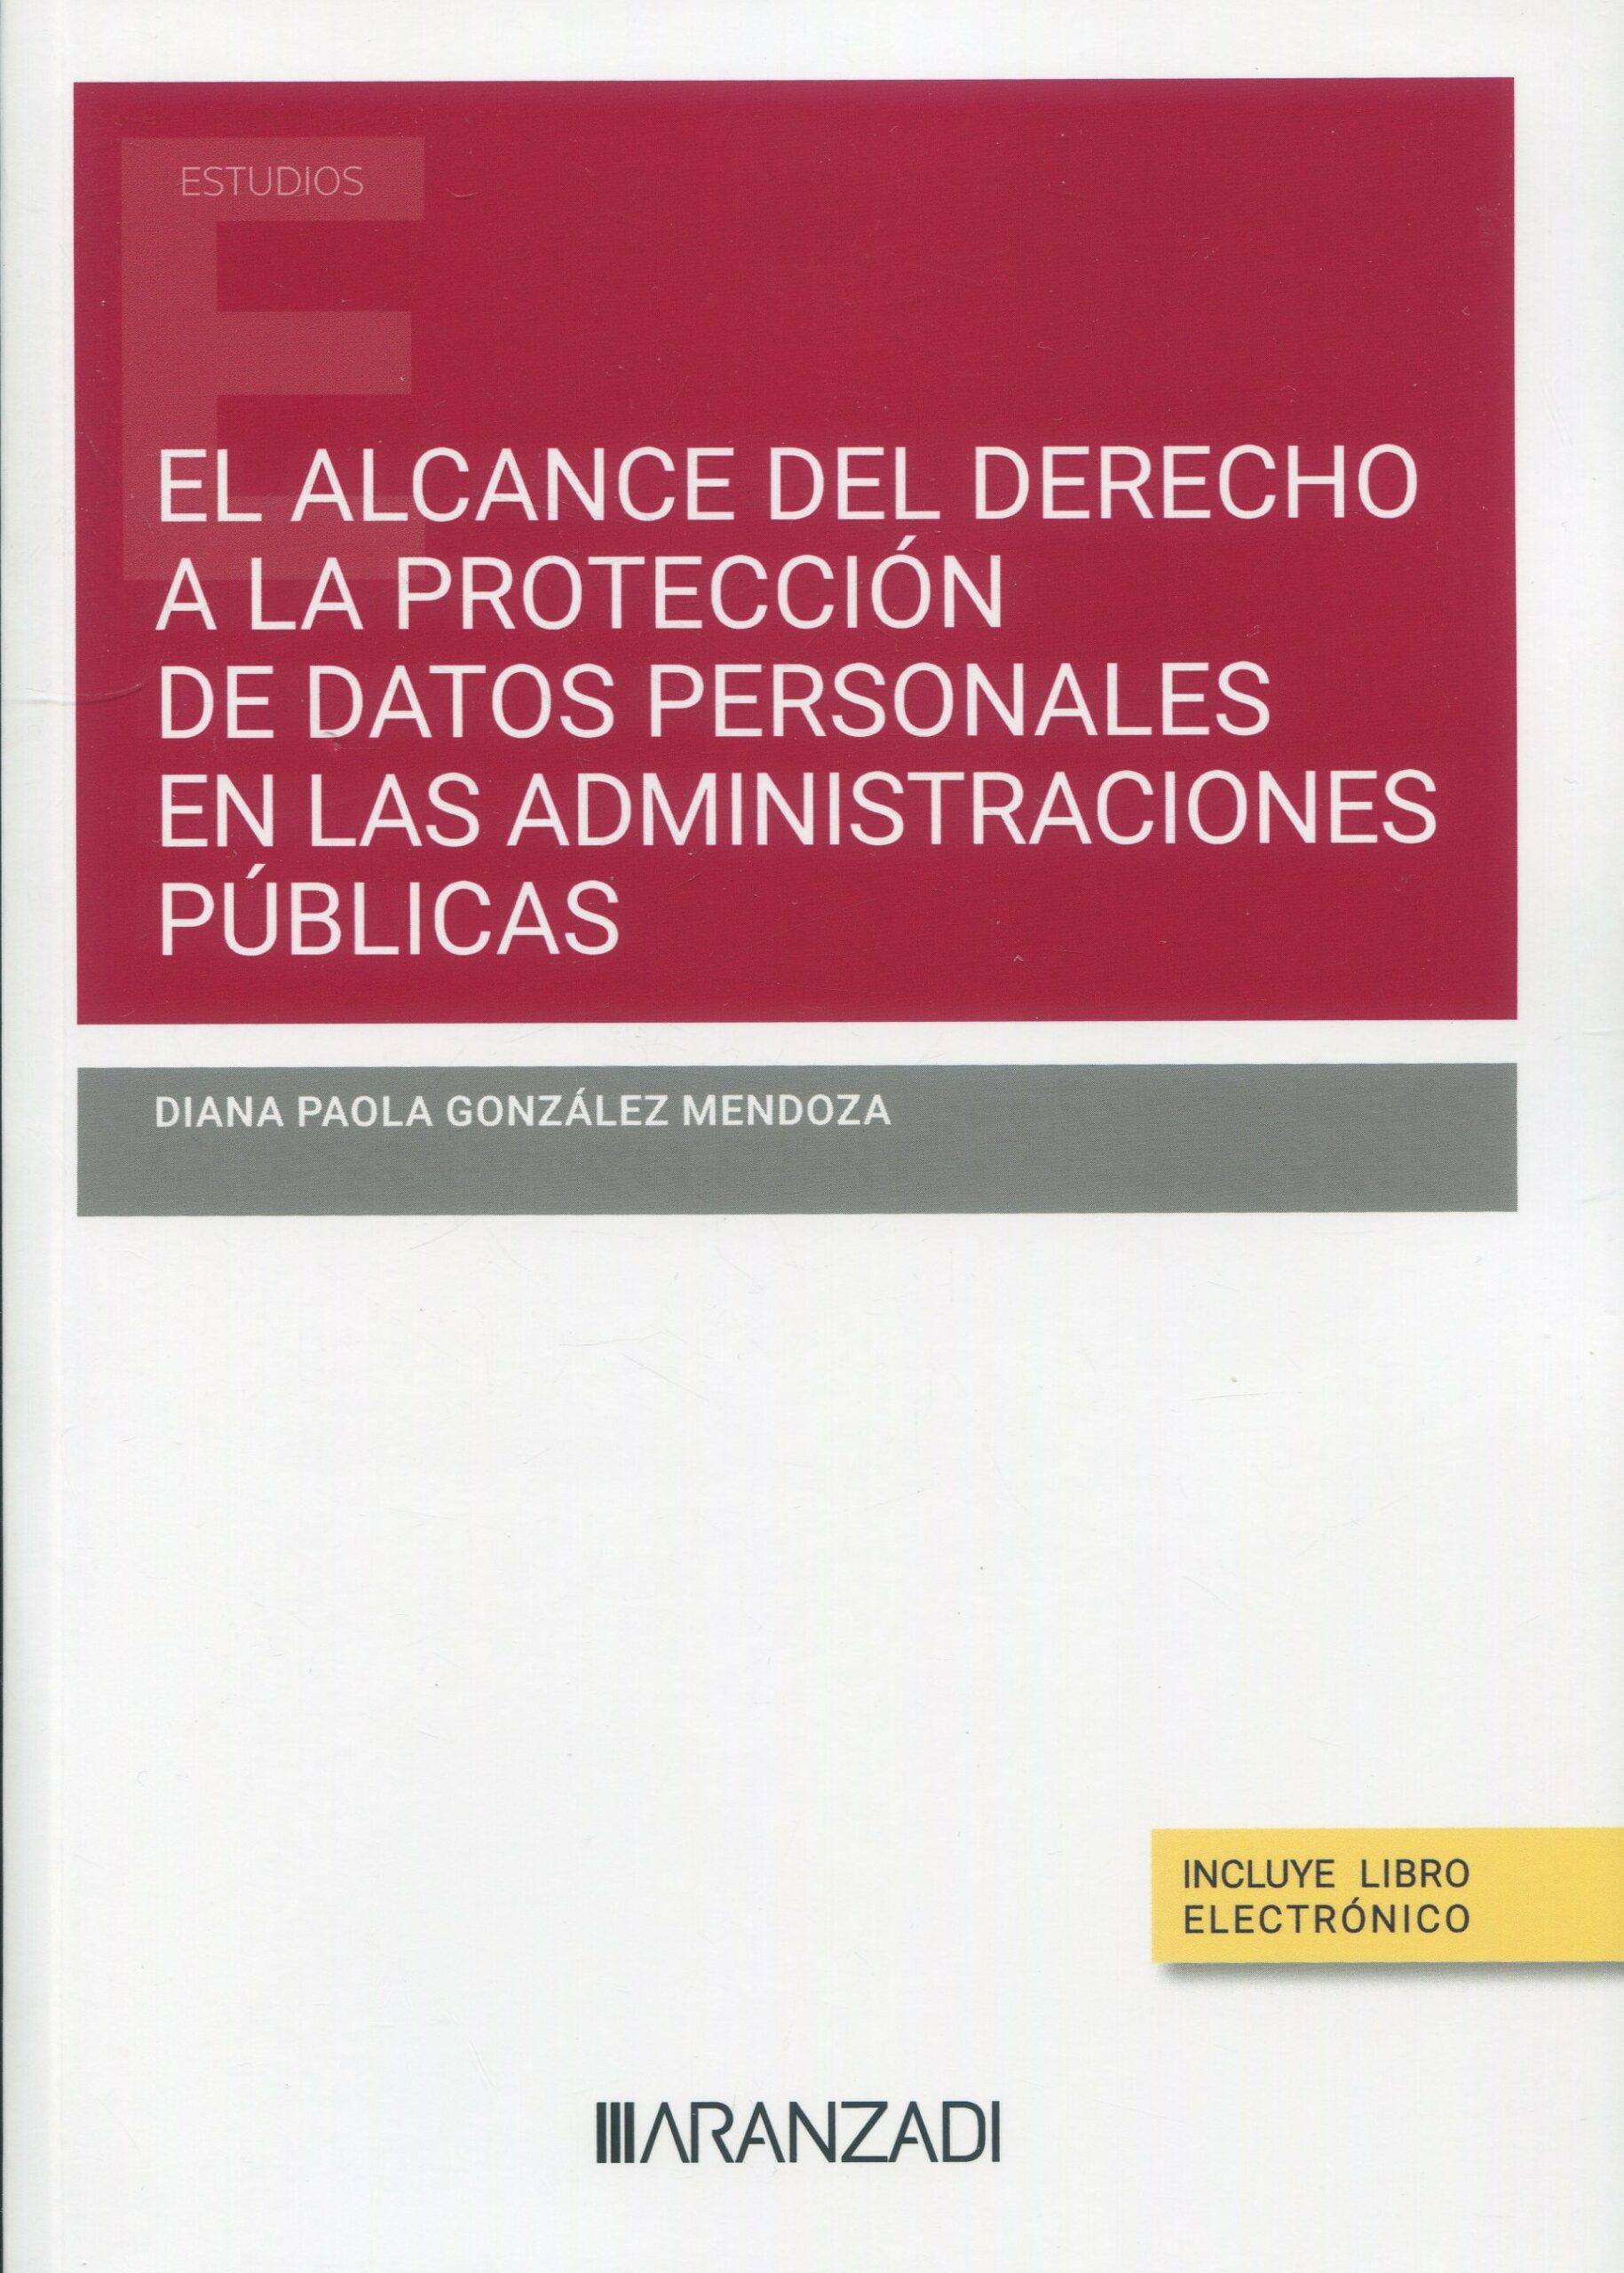 Imagen de portada del libro El alcance del derecho a la protección de datos personales en las administraciones públicas